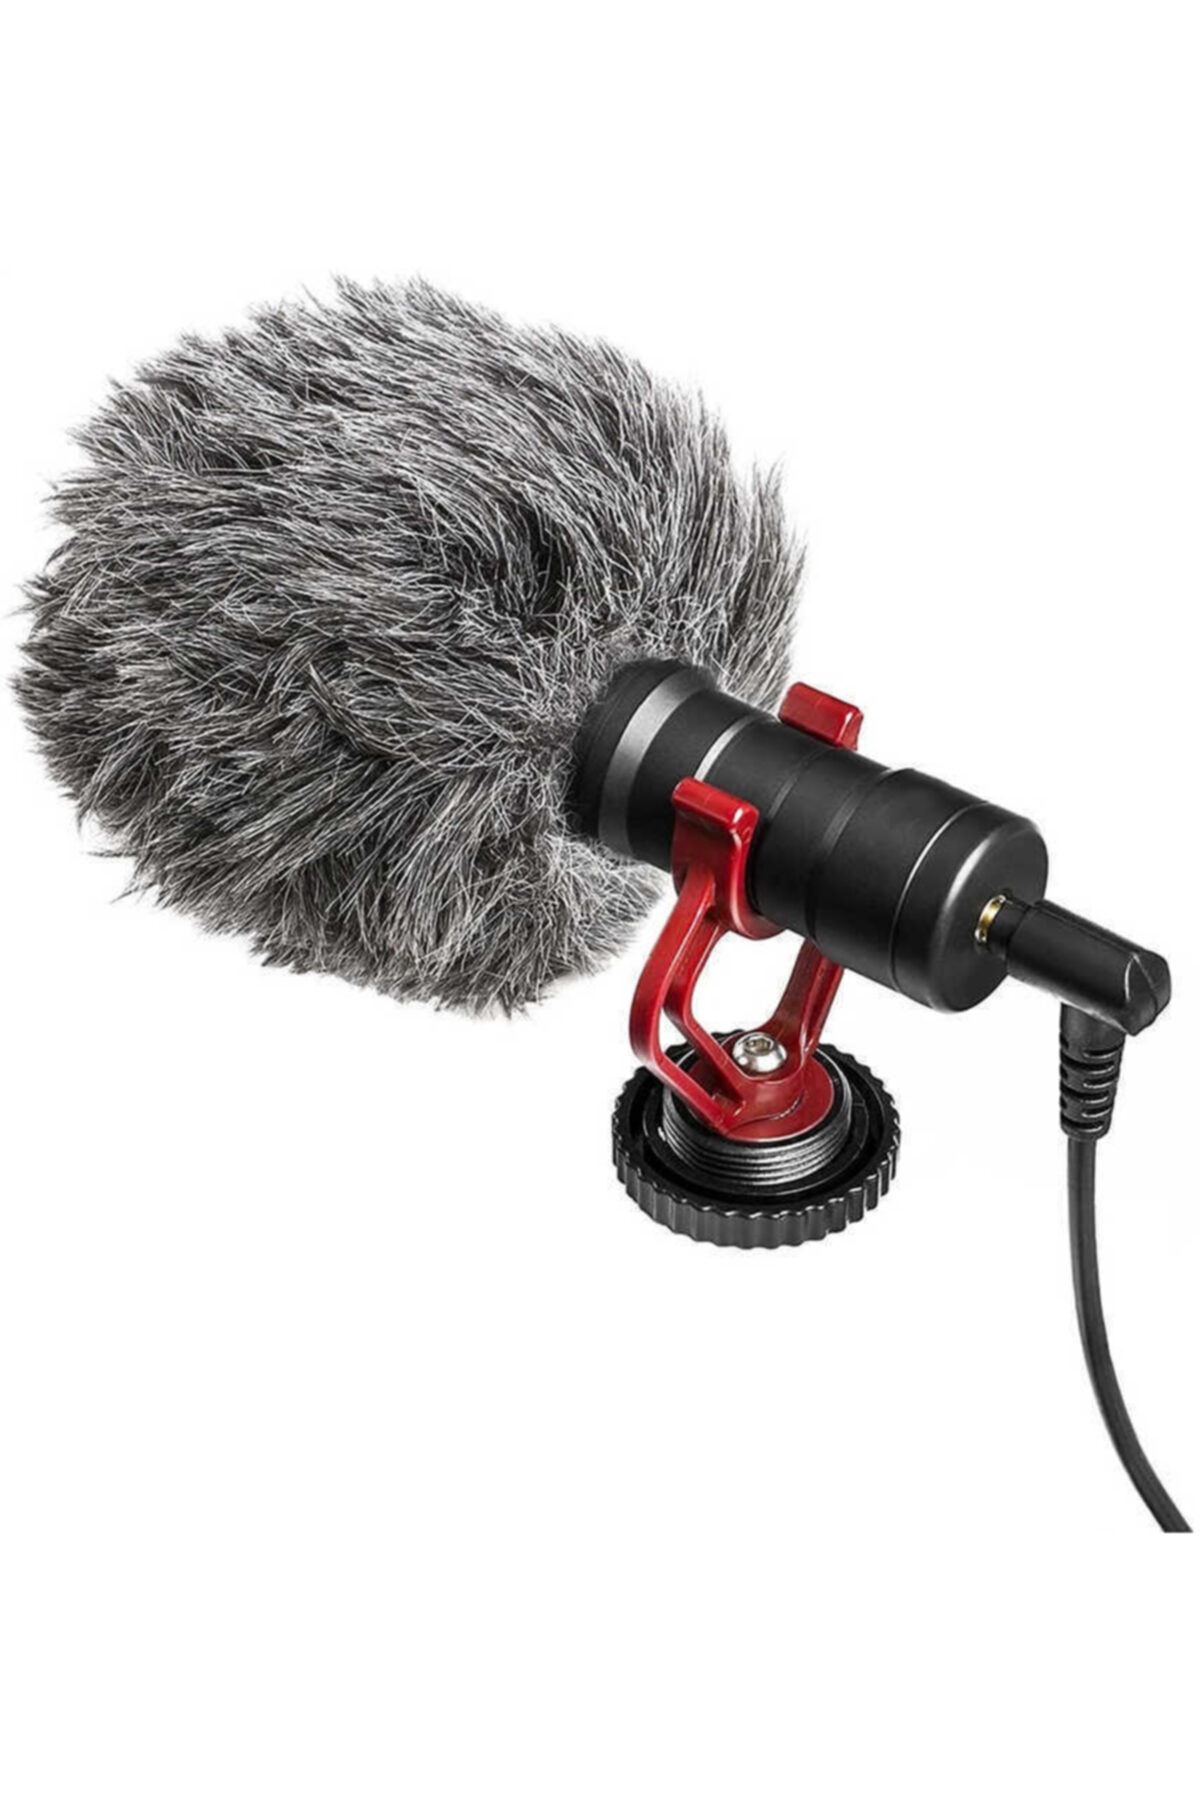 Zore Dc-c9 Canlı Yayın Mikrofon